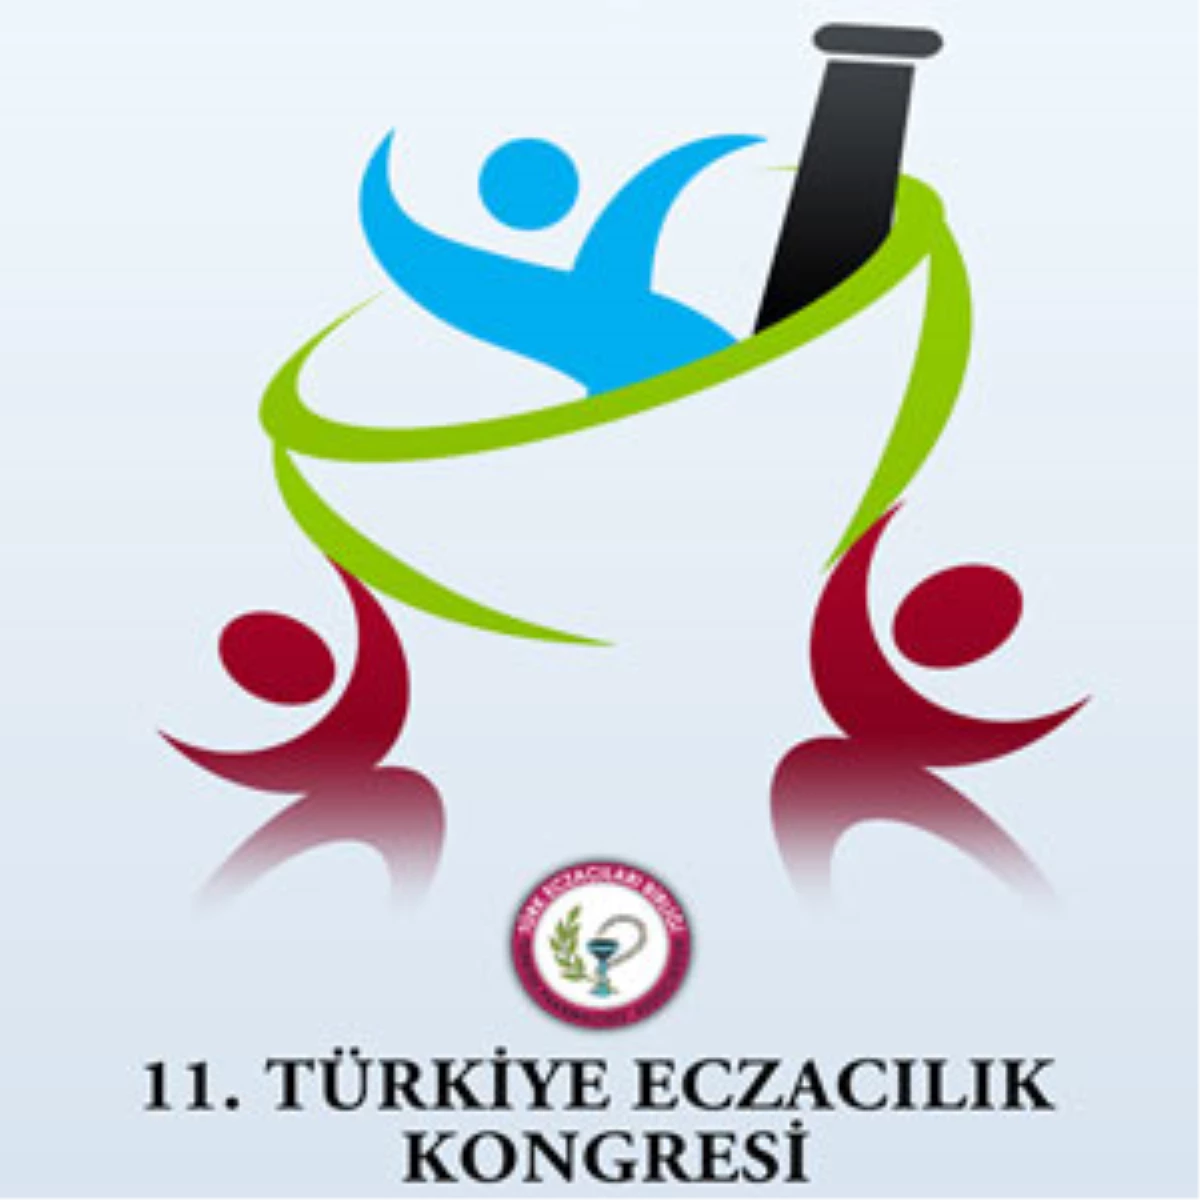 "11. Türkiye Eczacılık Kongresi"